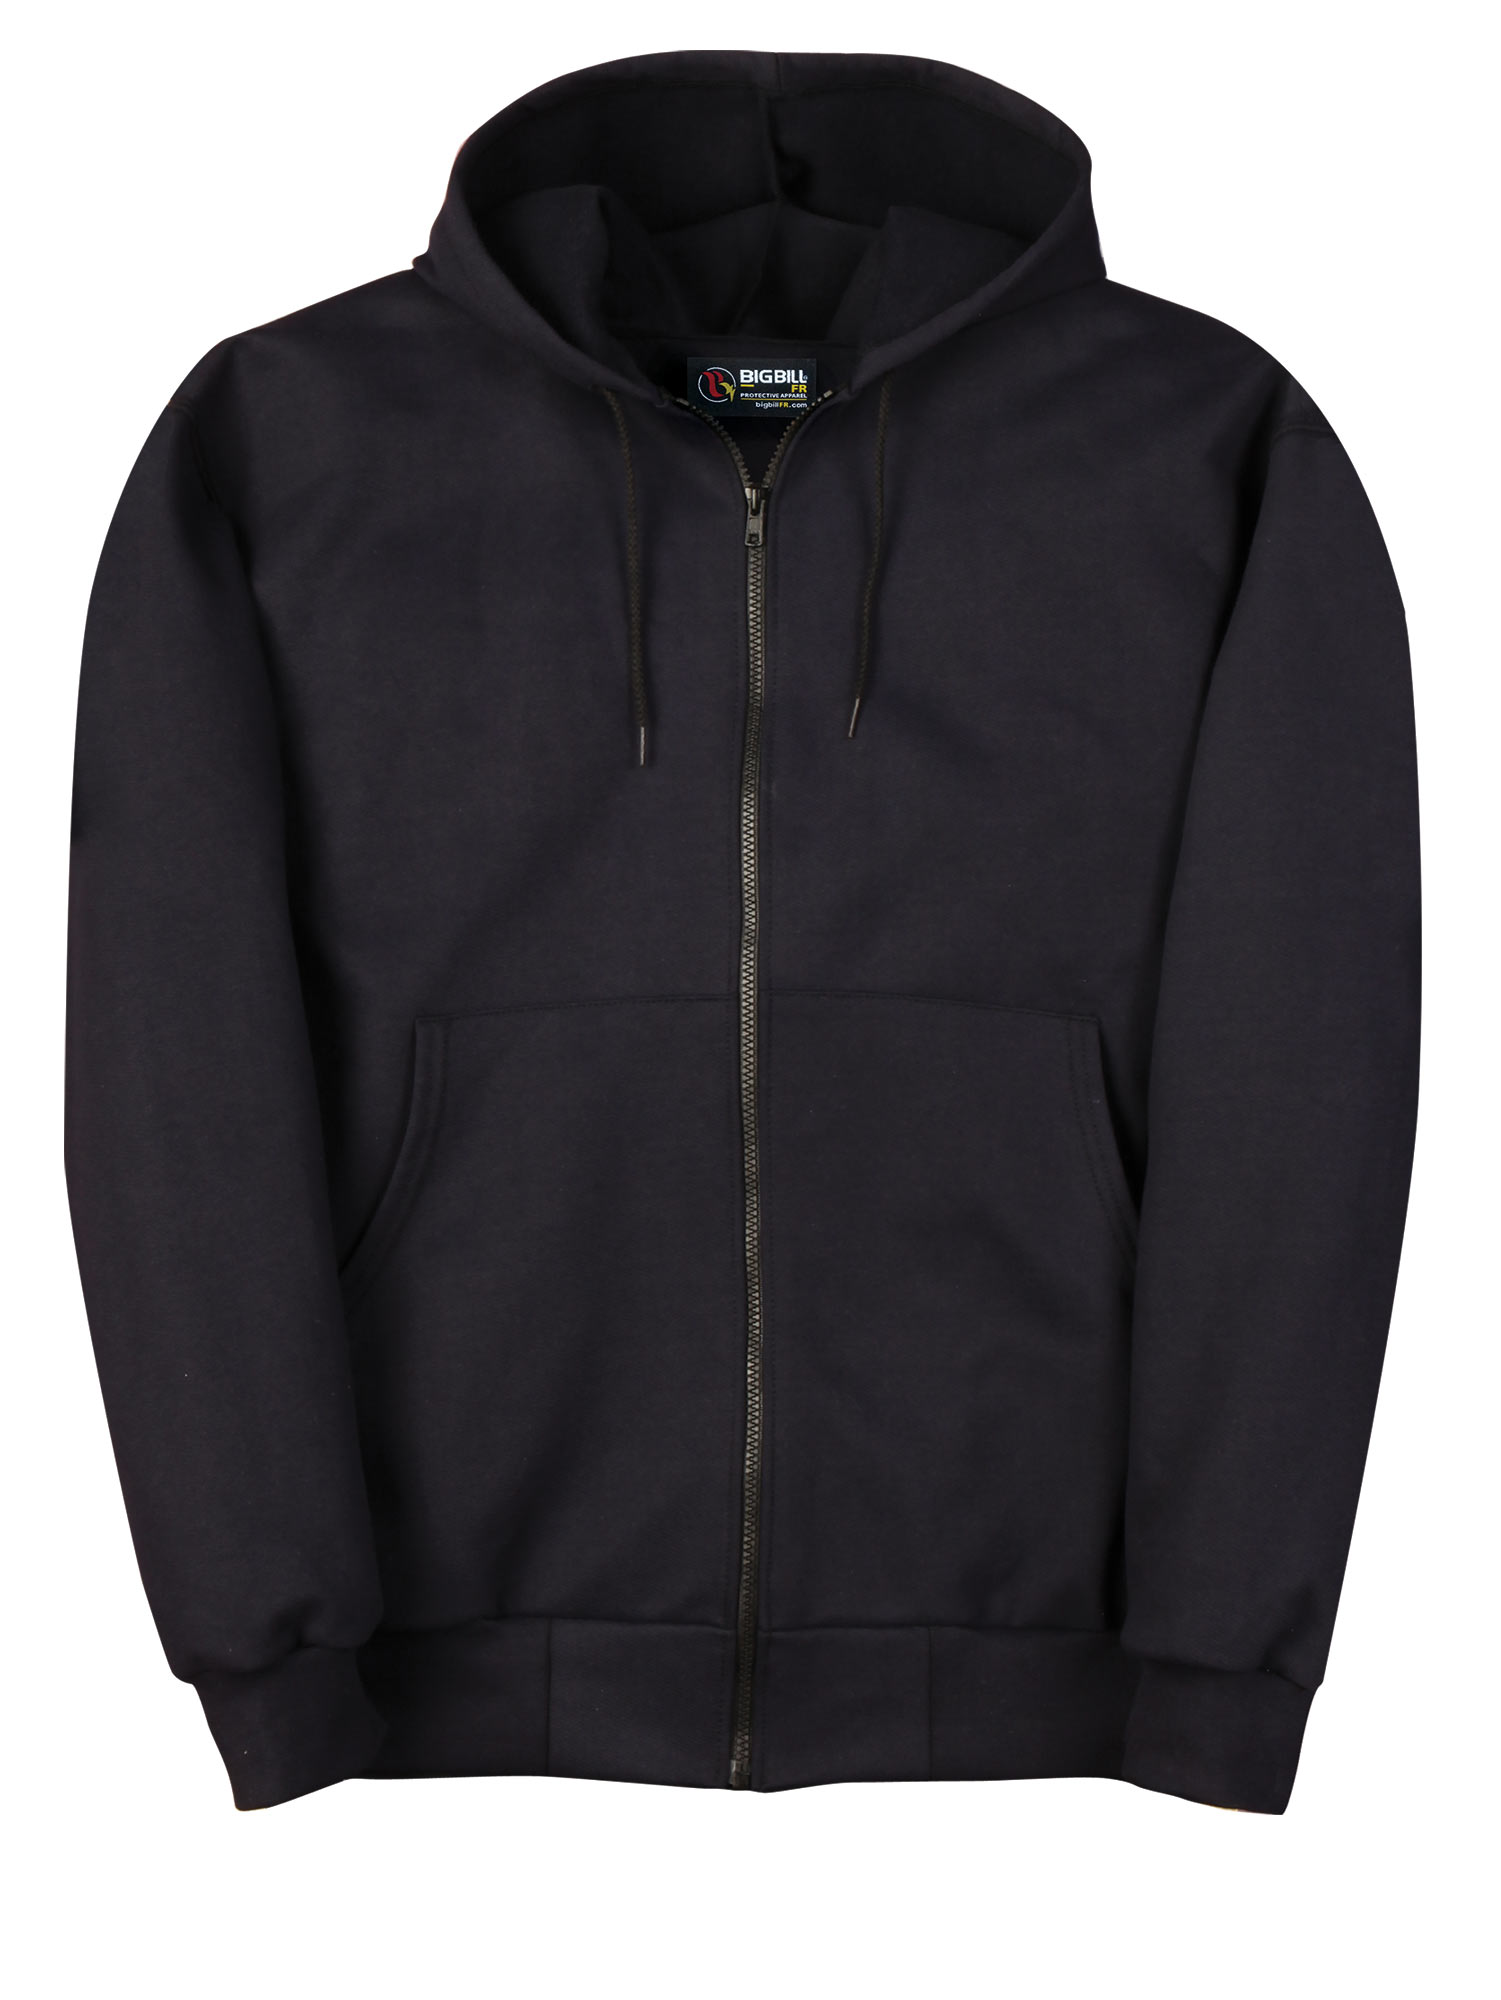 Big Bill 14 oz Flamex® FR Zip Up Hooded Sweatshirt - DW17IT14